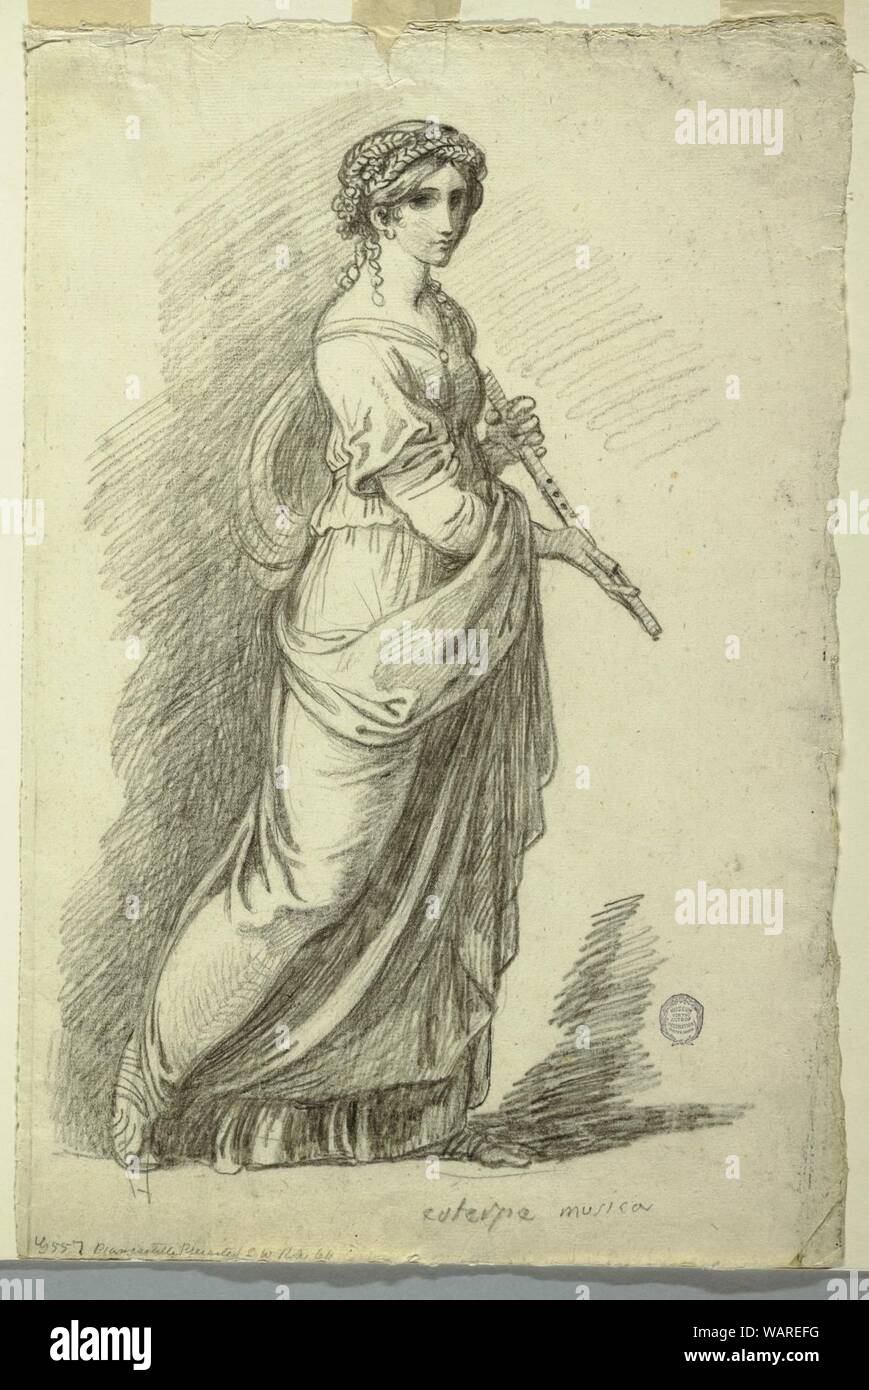 Disegno, Euterpe, musa della poesia lirica, ca. 1820 Foto Stock